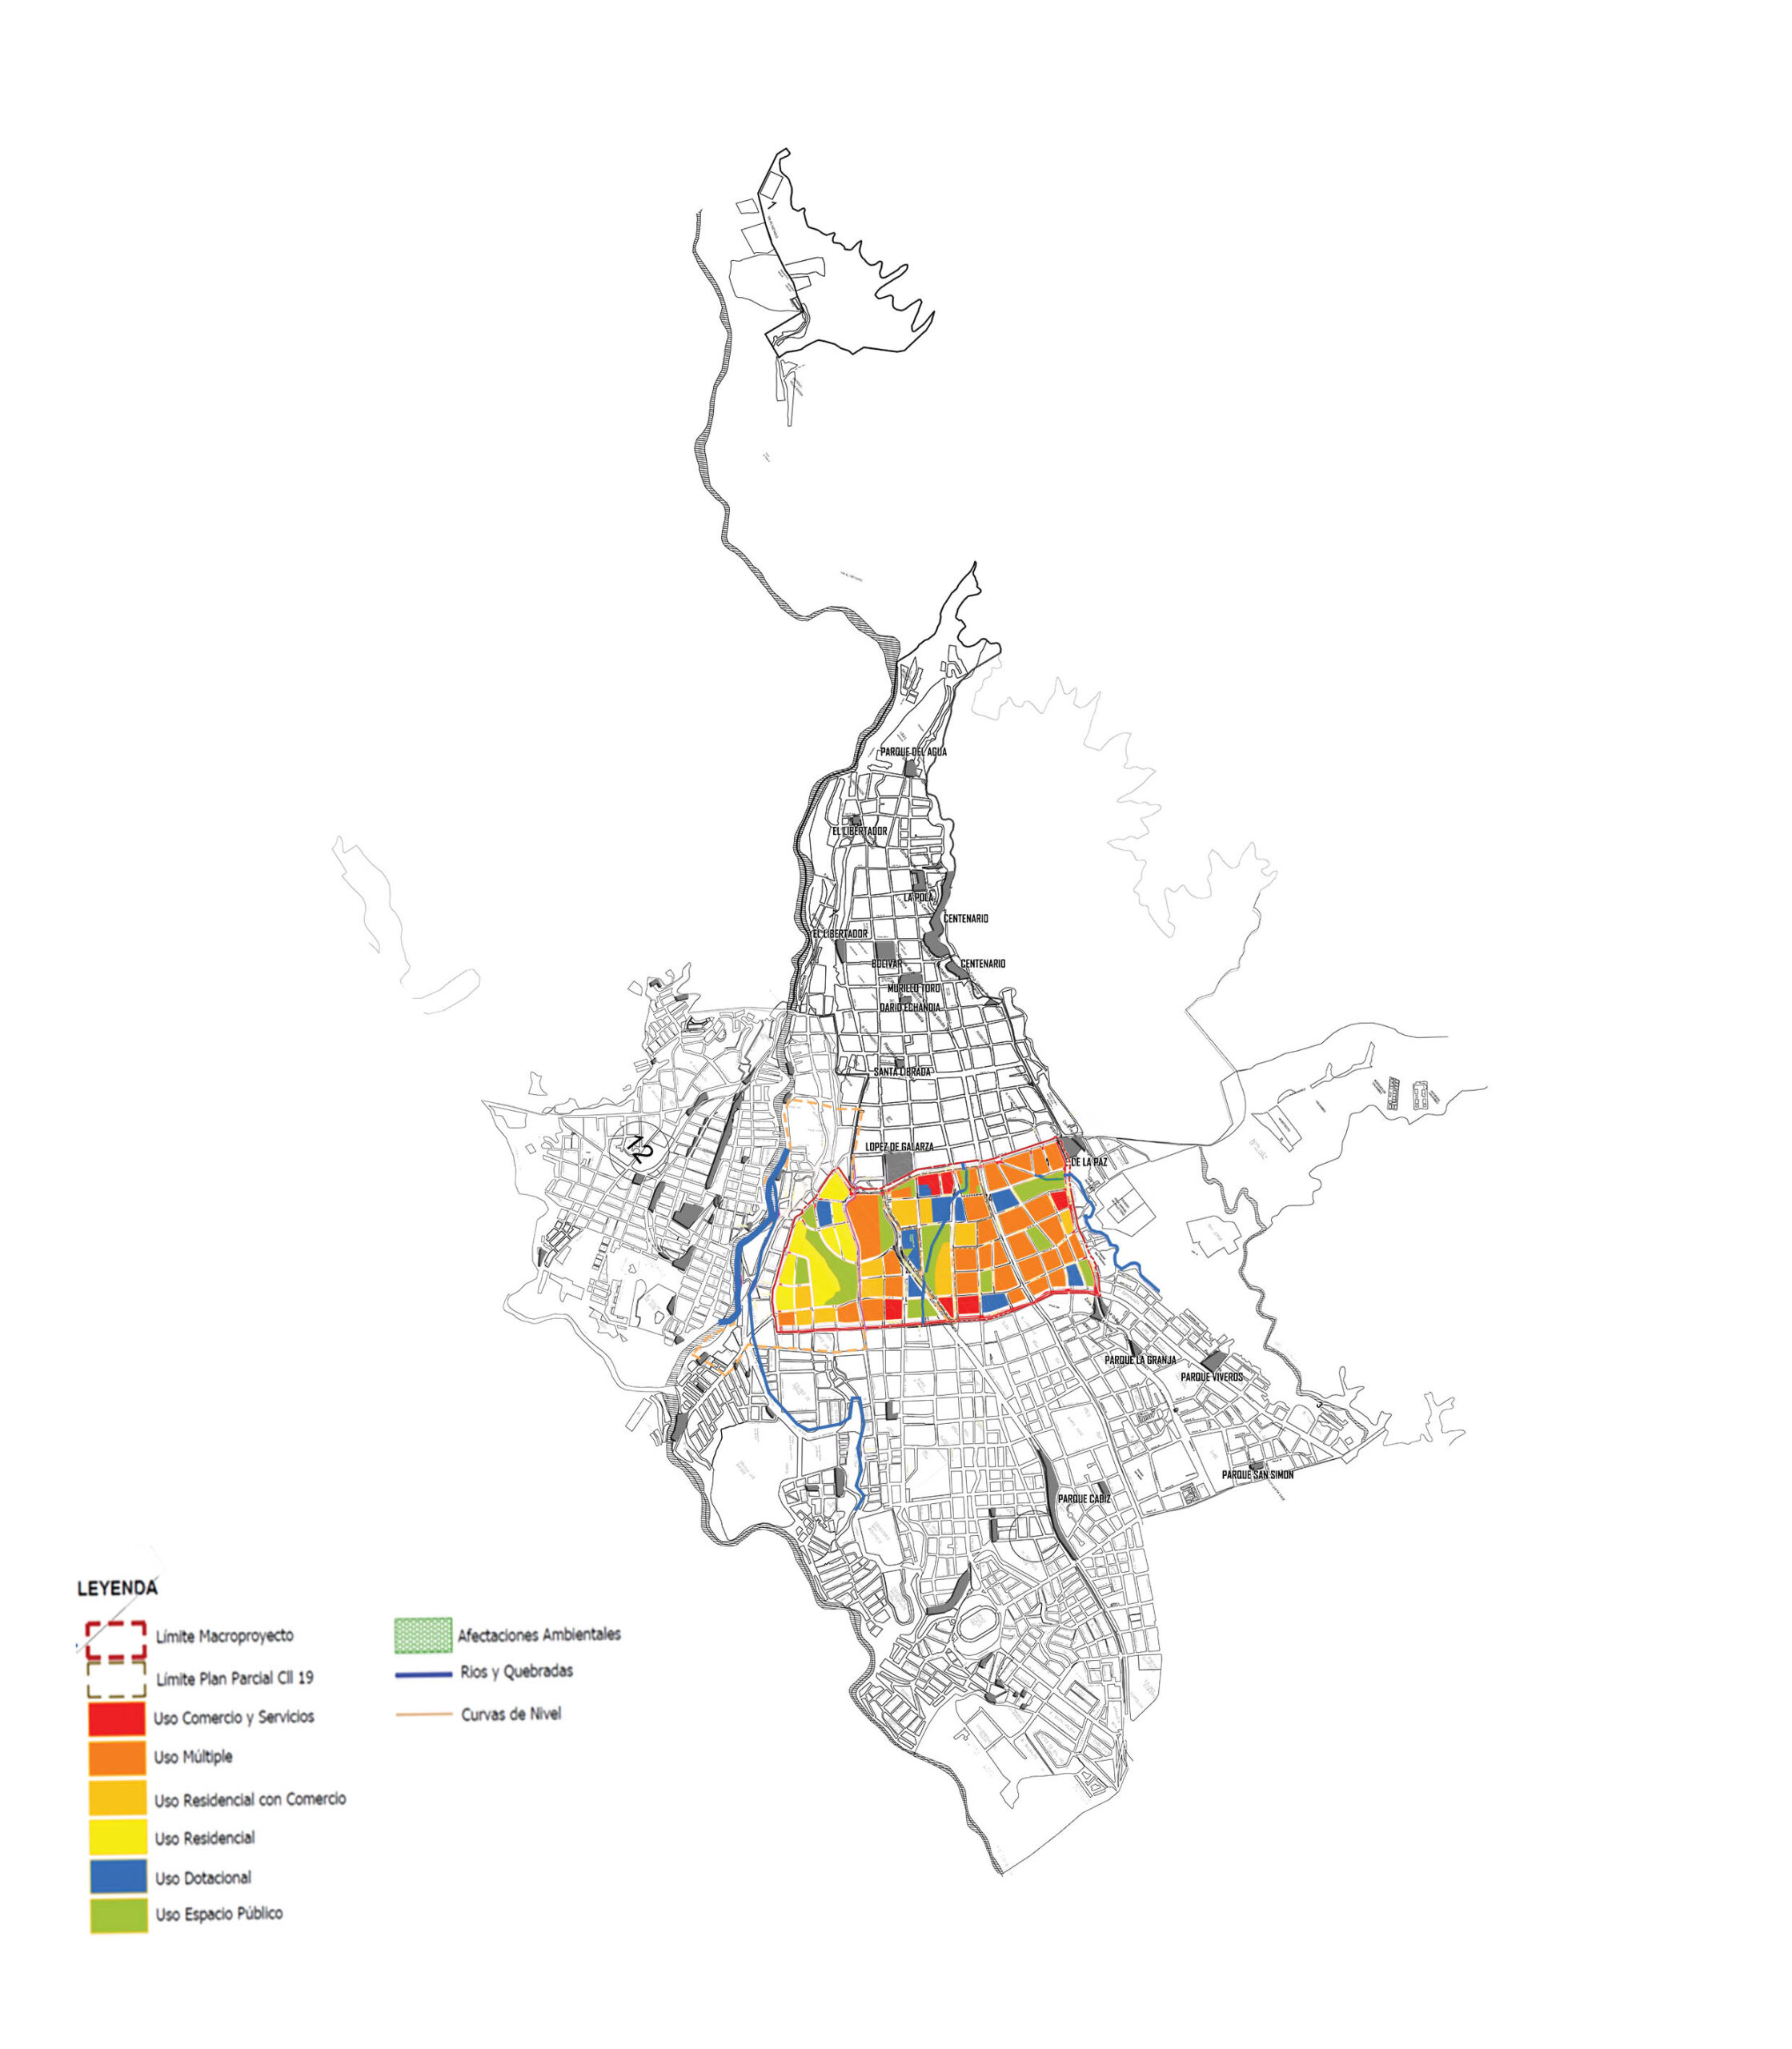 localizacion of the urban renewal area - land uses